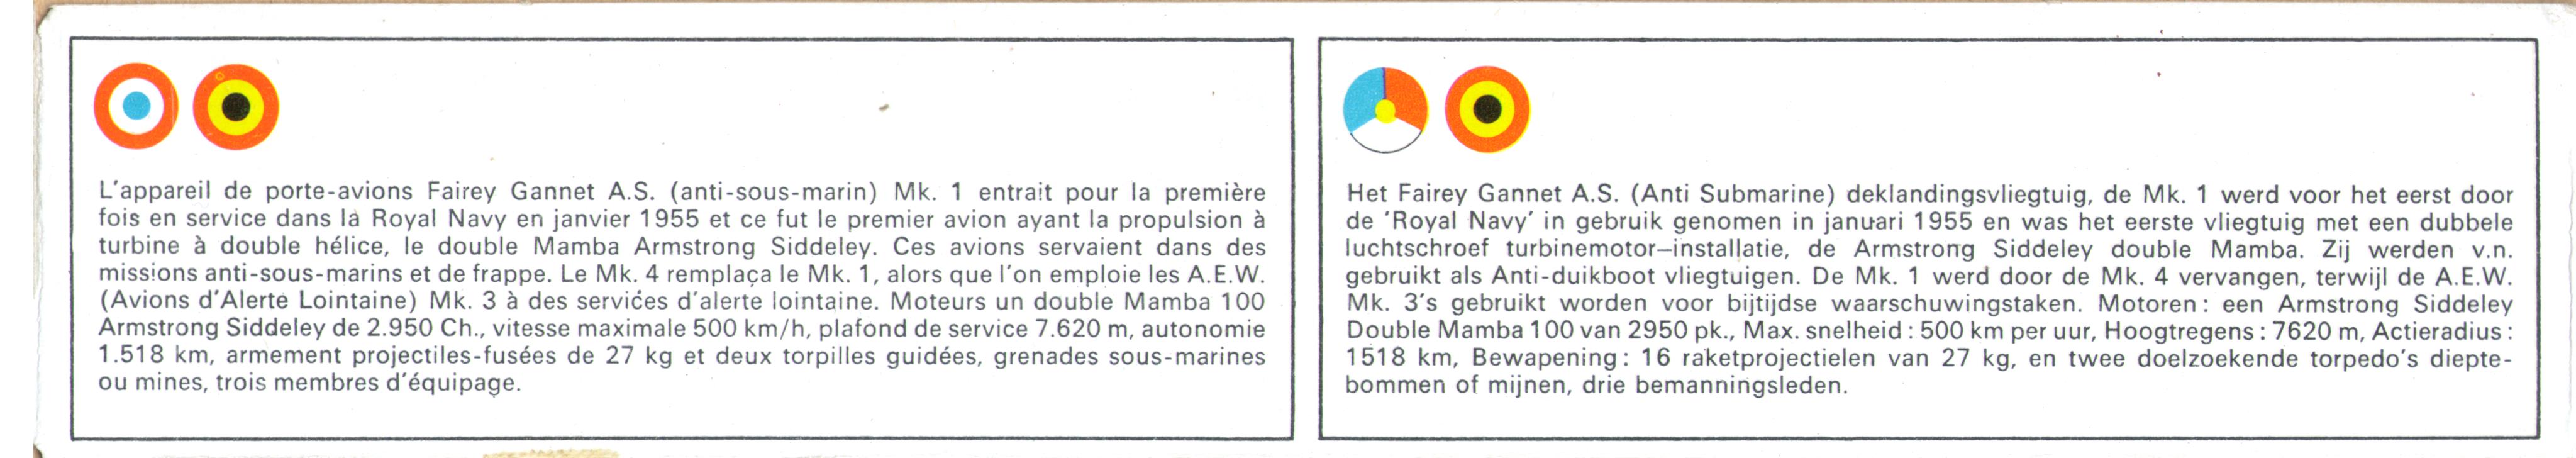 Коробка FROG F228 Fairey Gannet, история прототипа на шести языках